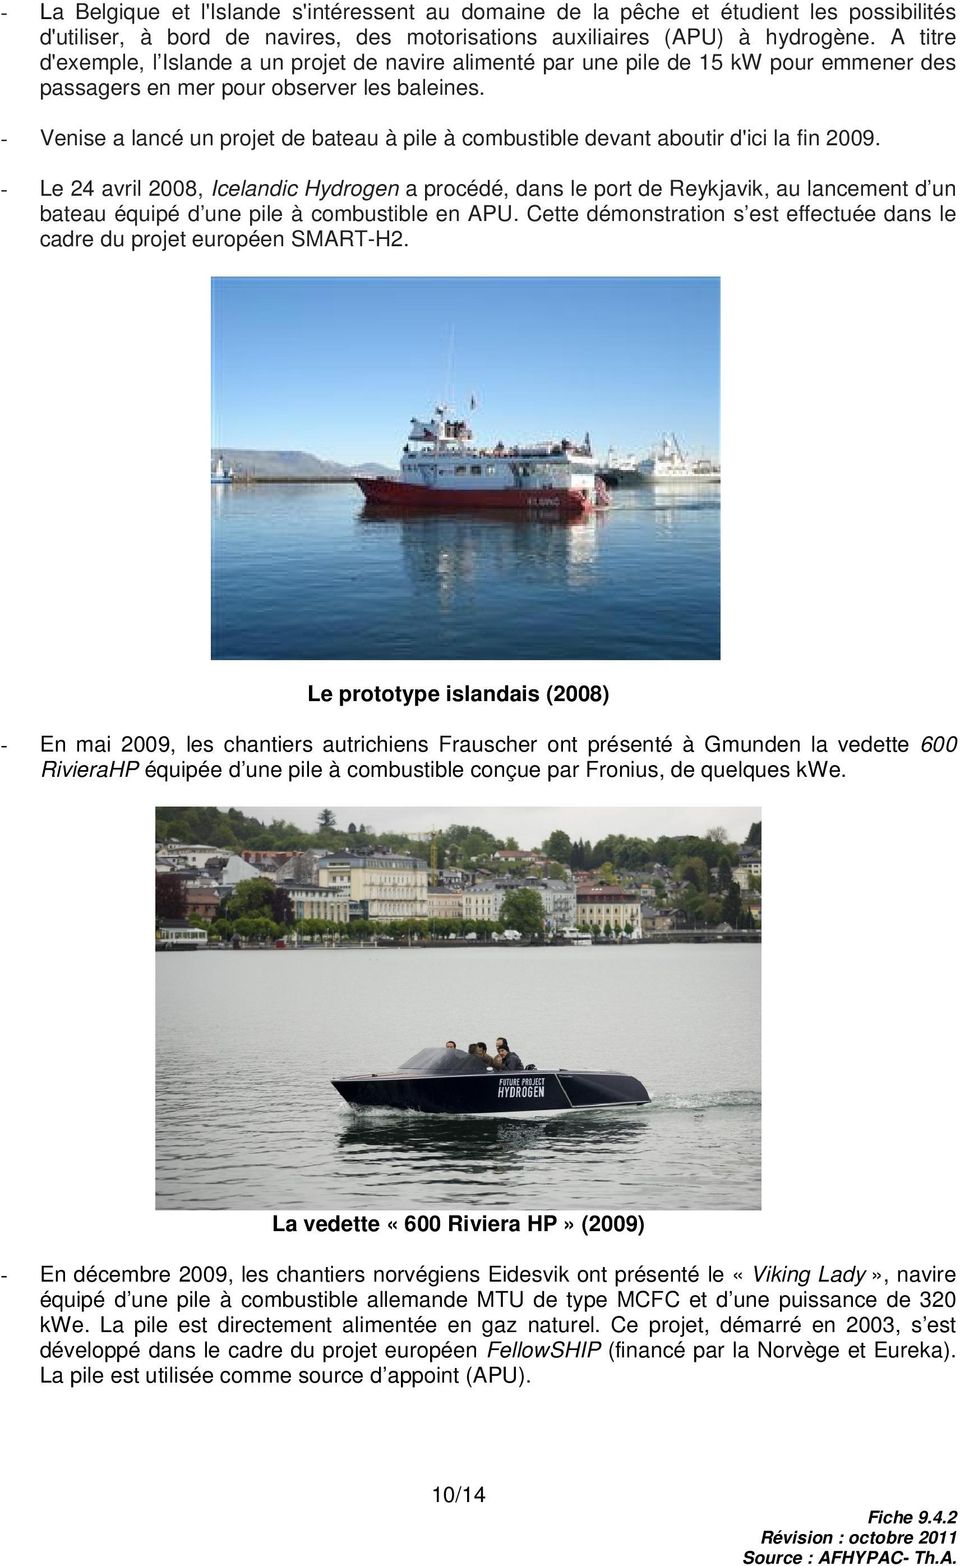 - Venise a lancé un projet de bateau à pile à combustible devant aboutir d'ici la fin 2009.